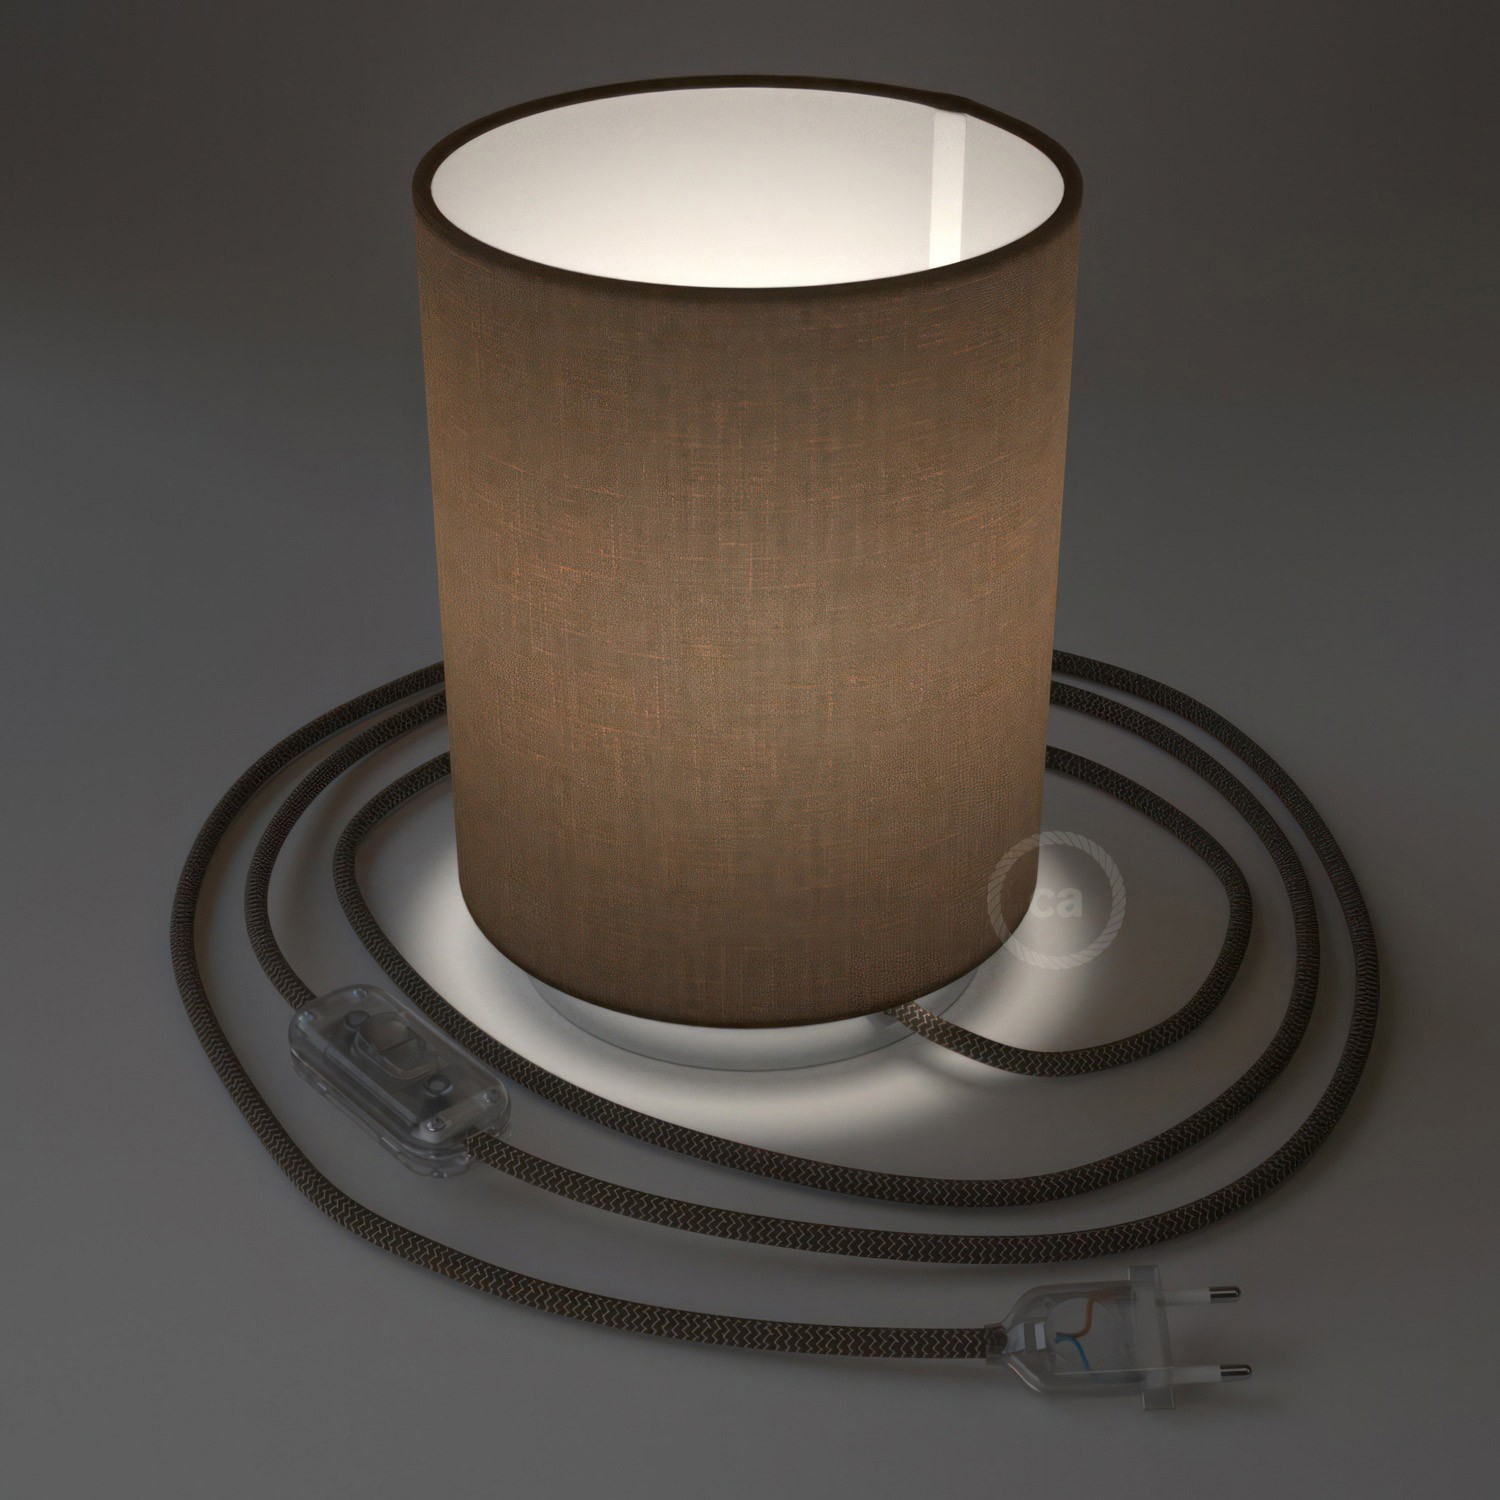 Posaluce i metall med Cilindro Camelot Brun lampskärm, komplett med textilkabel, sladdströmbrytare och 2-polig stickpropp.